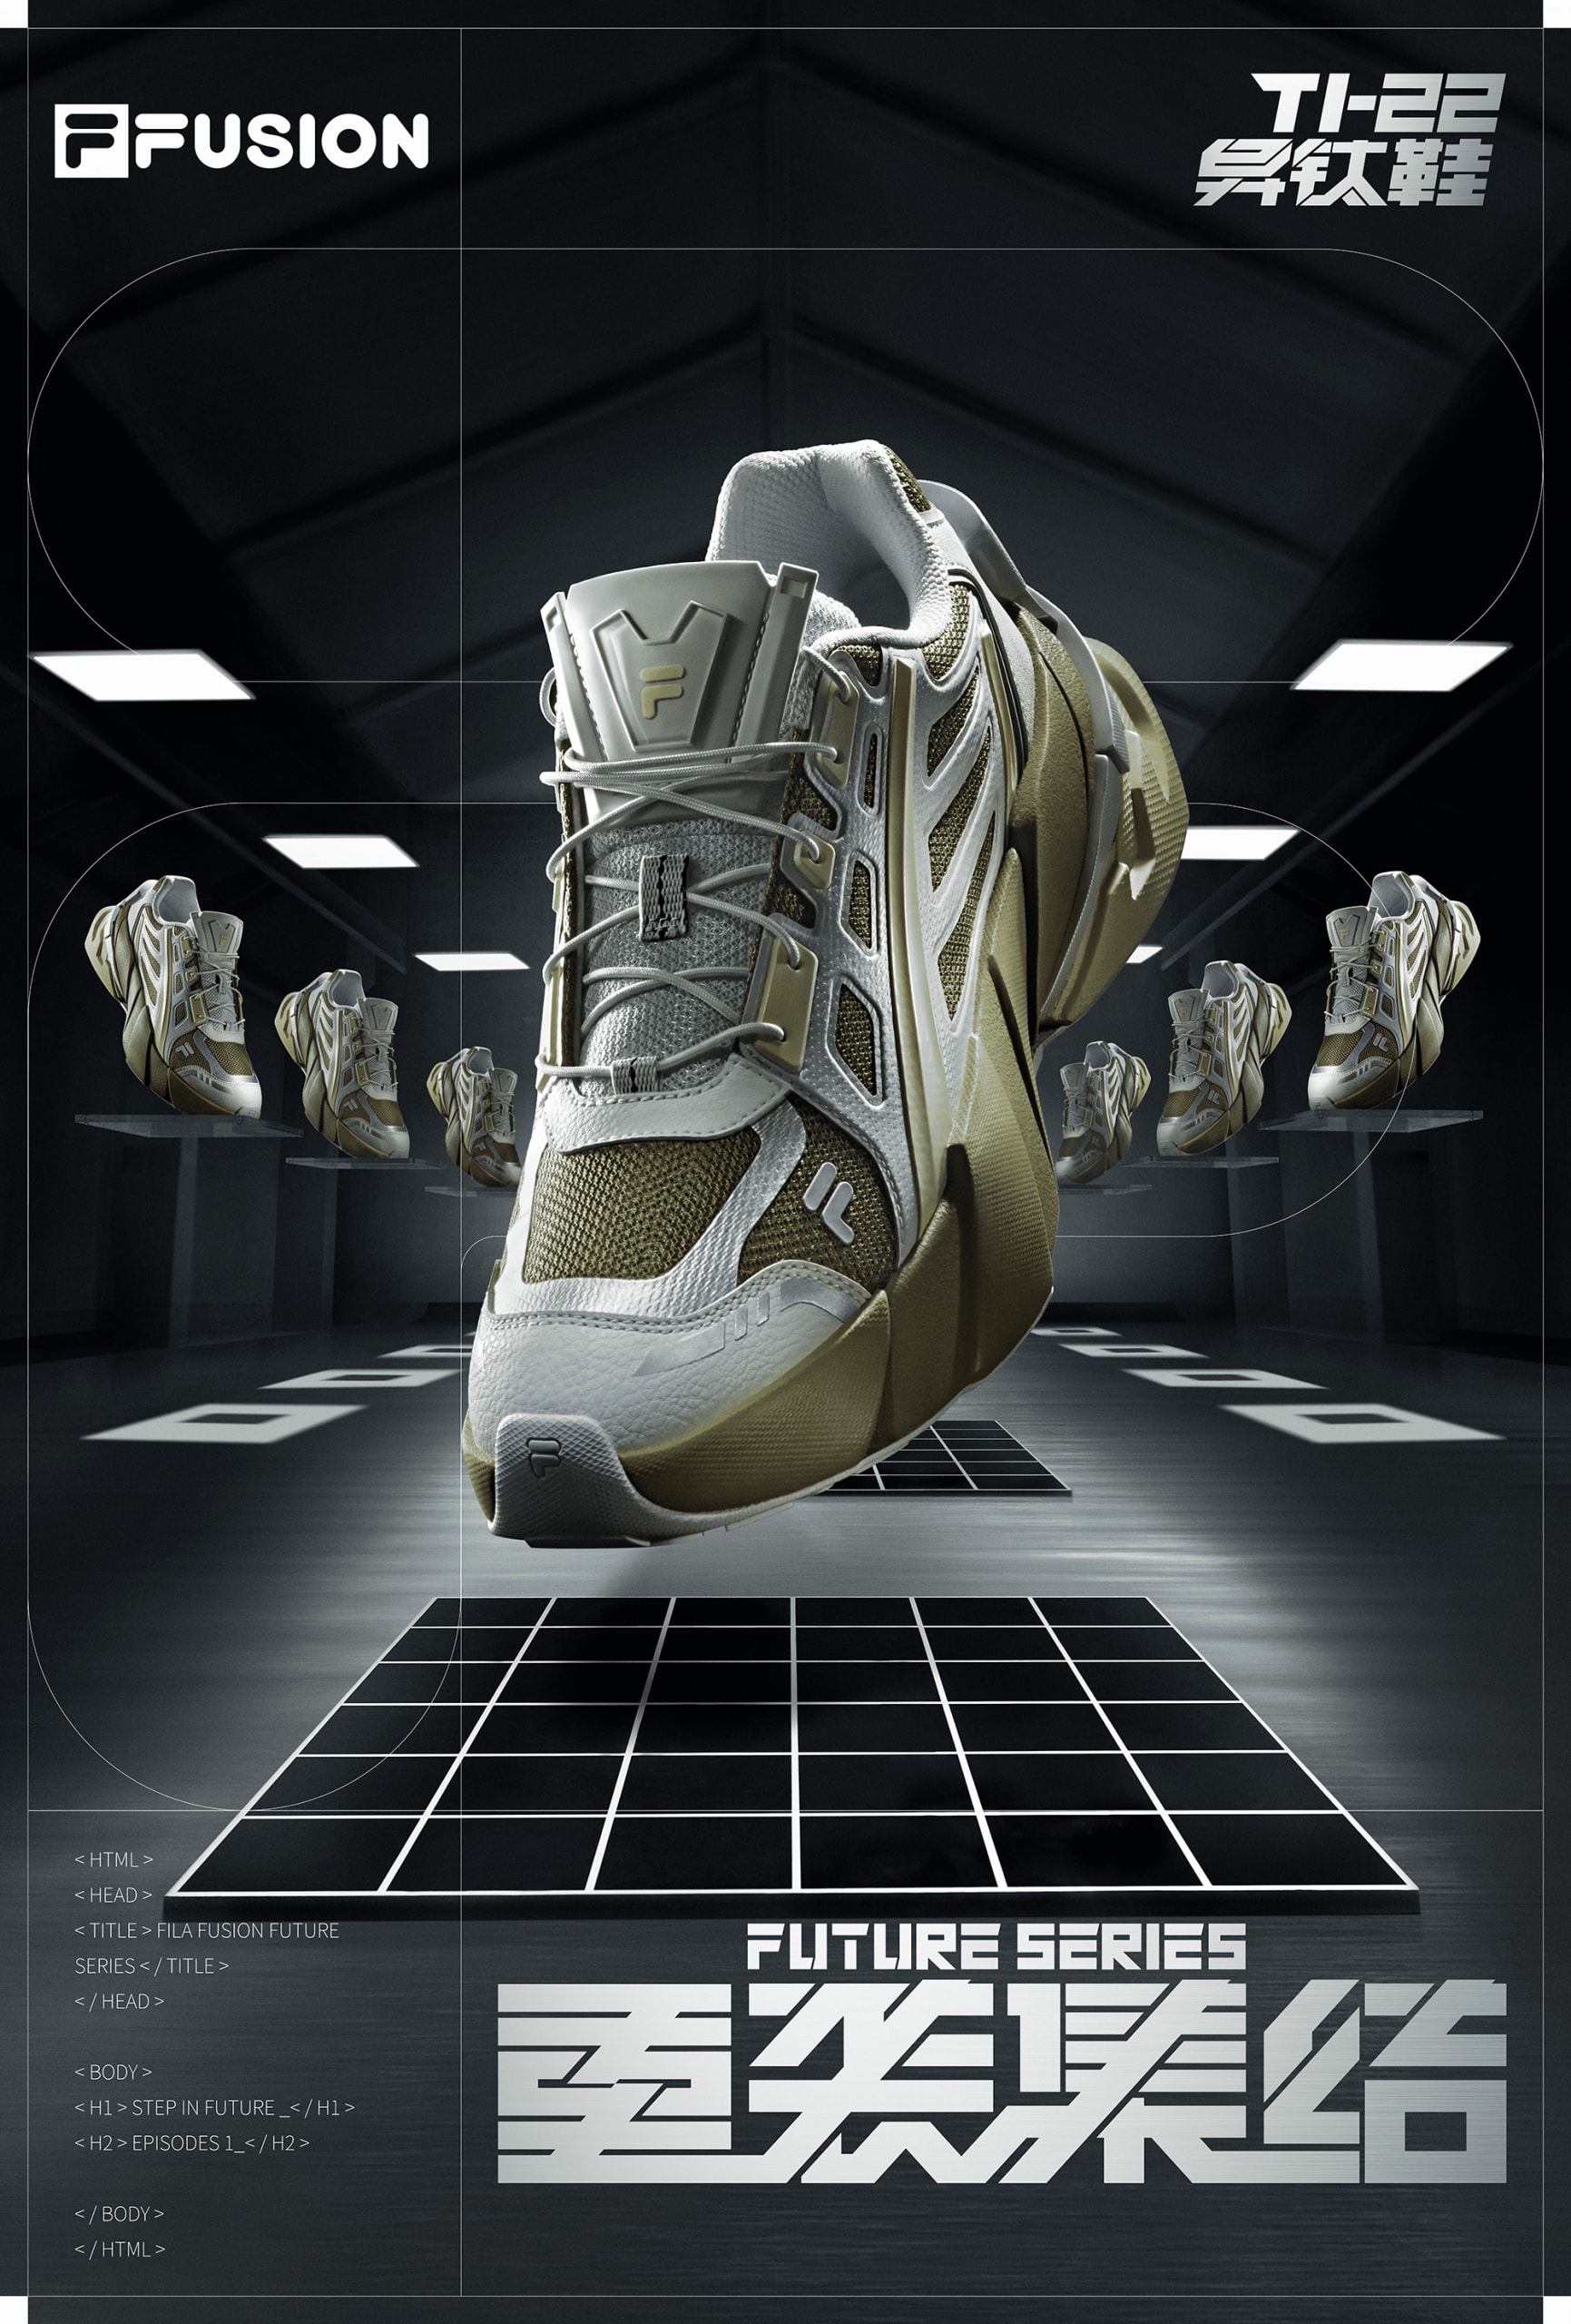 FILA FUSION 发布全新未来潮鞋 TI-22 异钛鞋